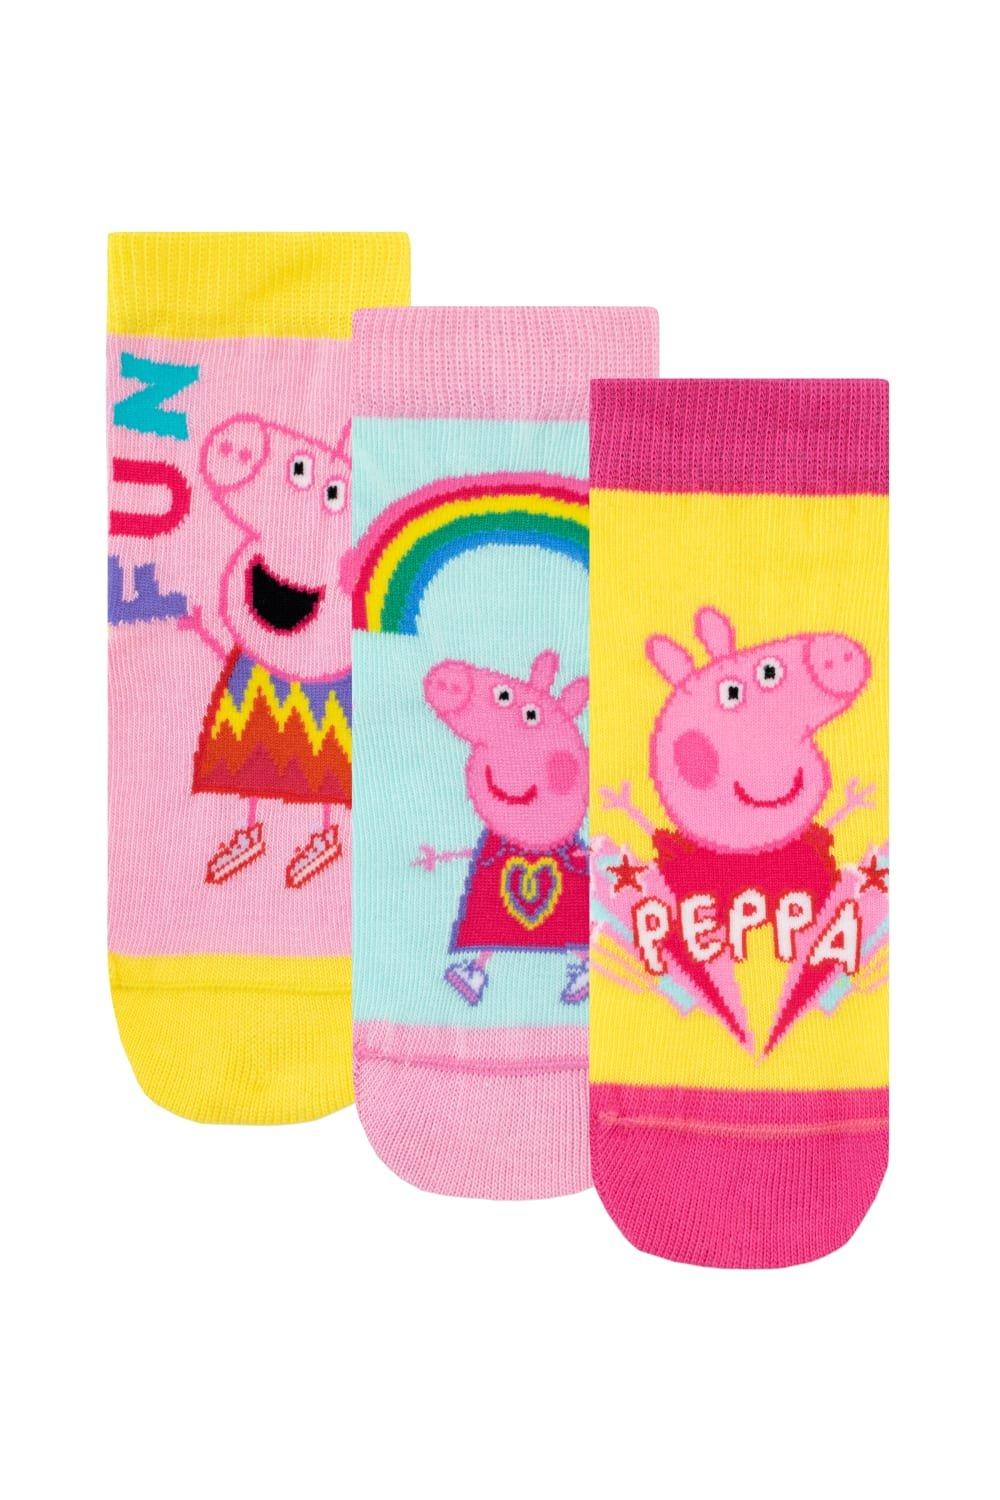 Набор носков Rainbow Fun, 3 шт. Peppa Pig, розовый набор игровой свинка пеппа